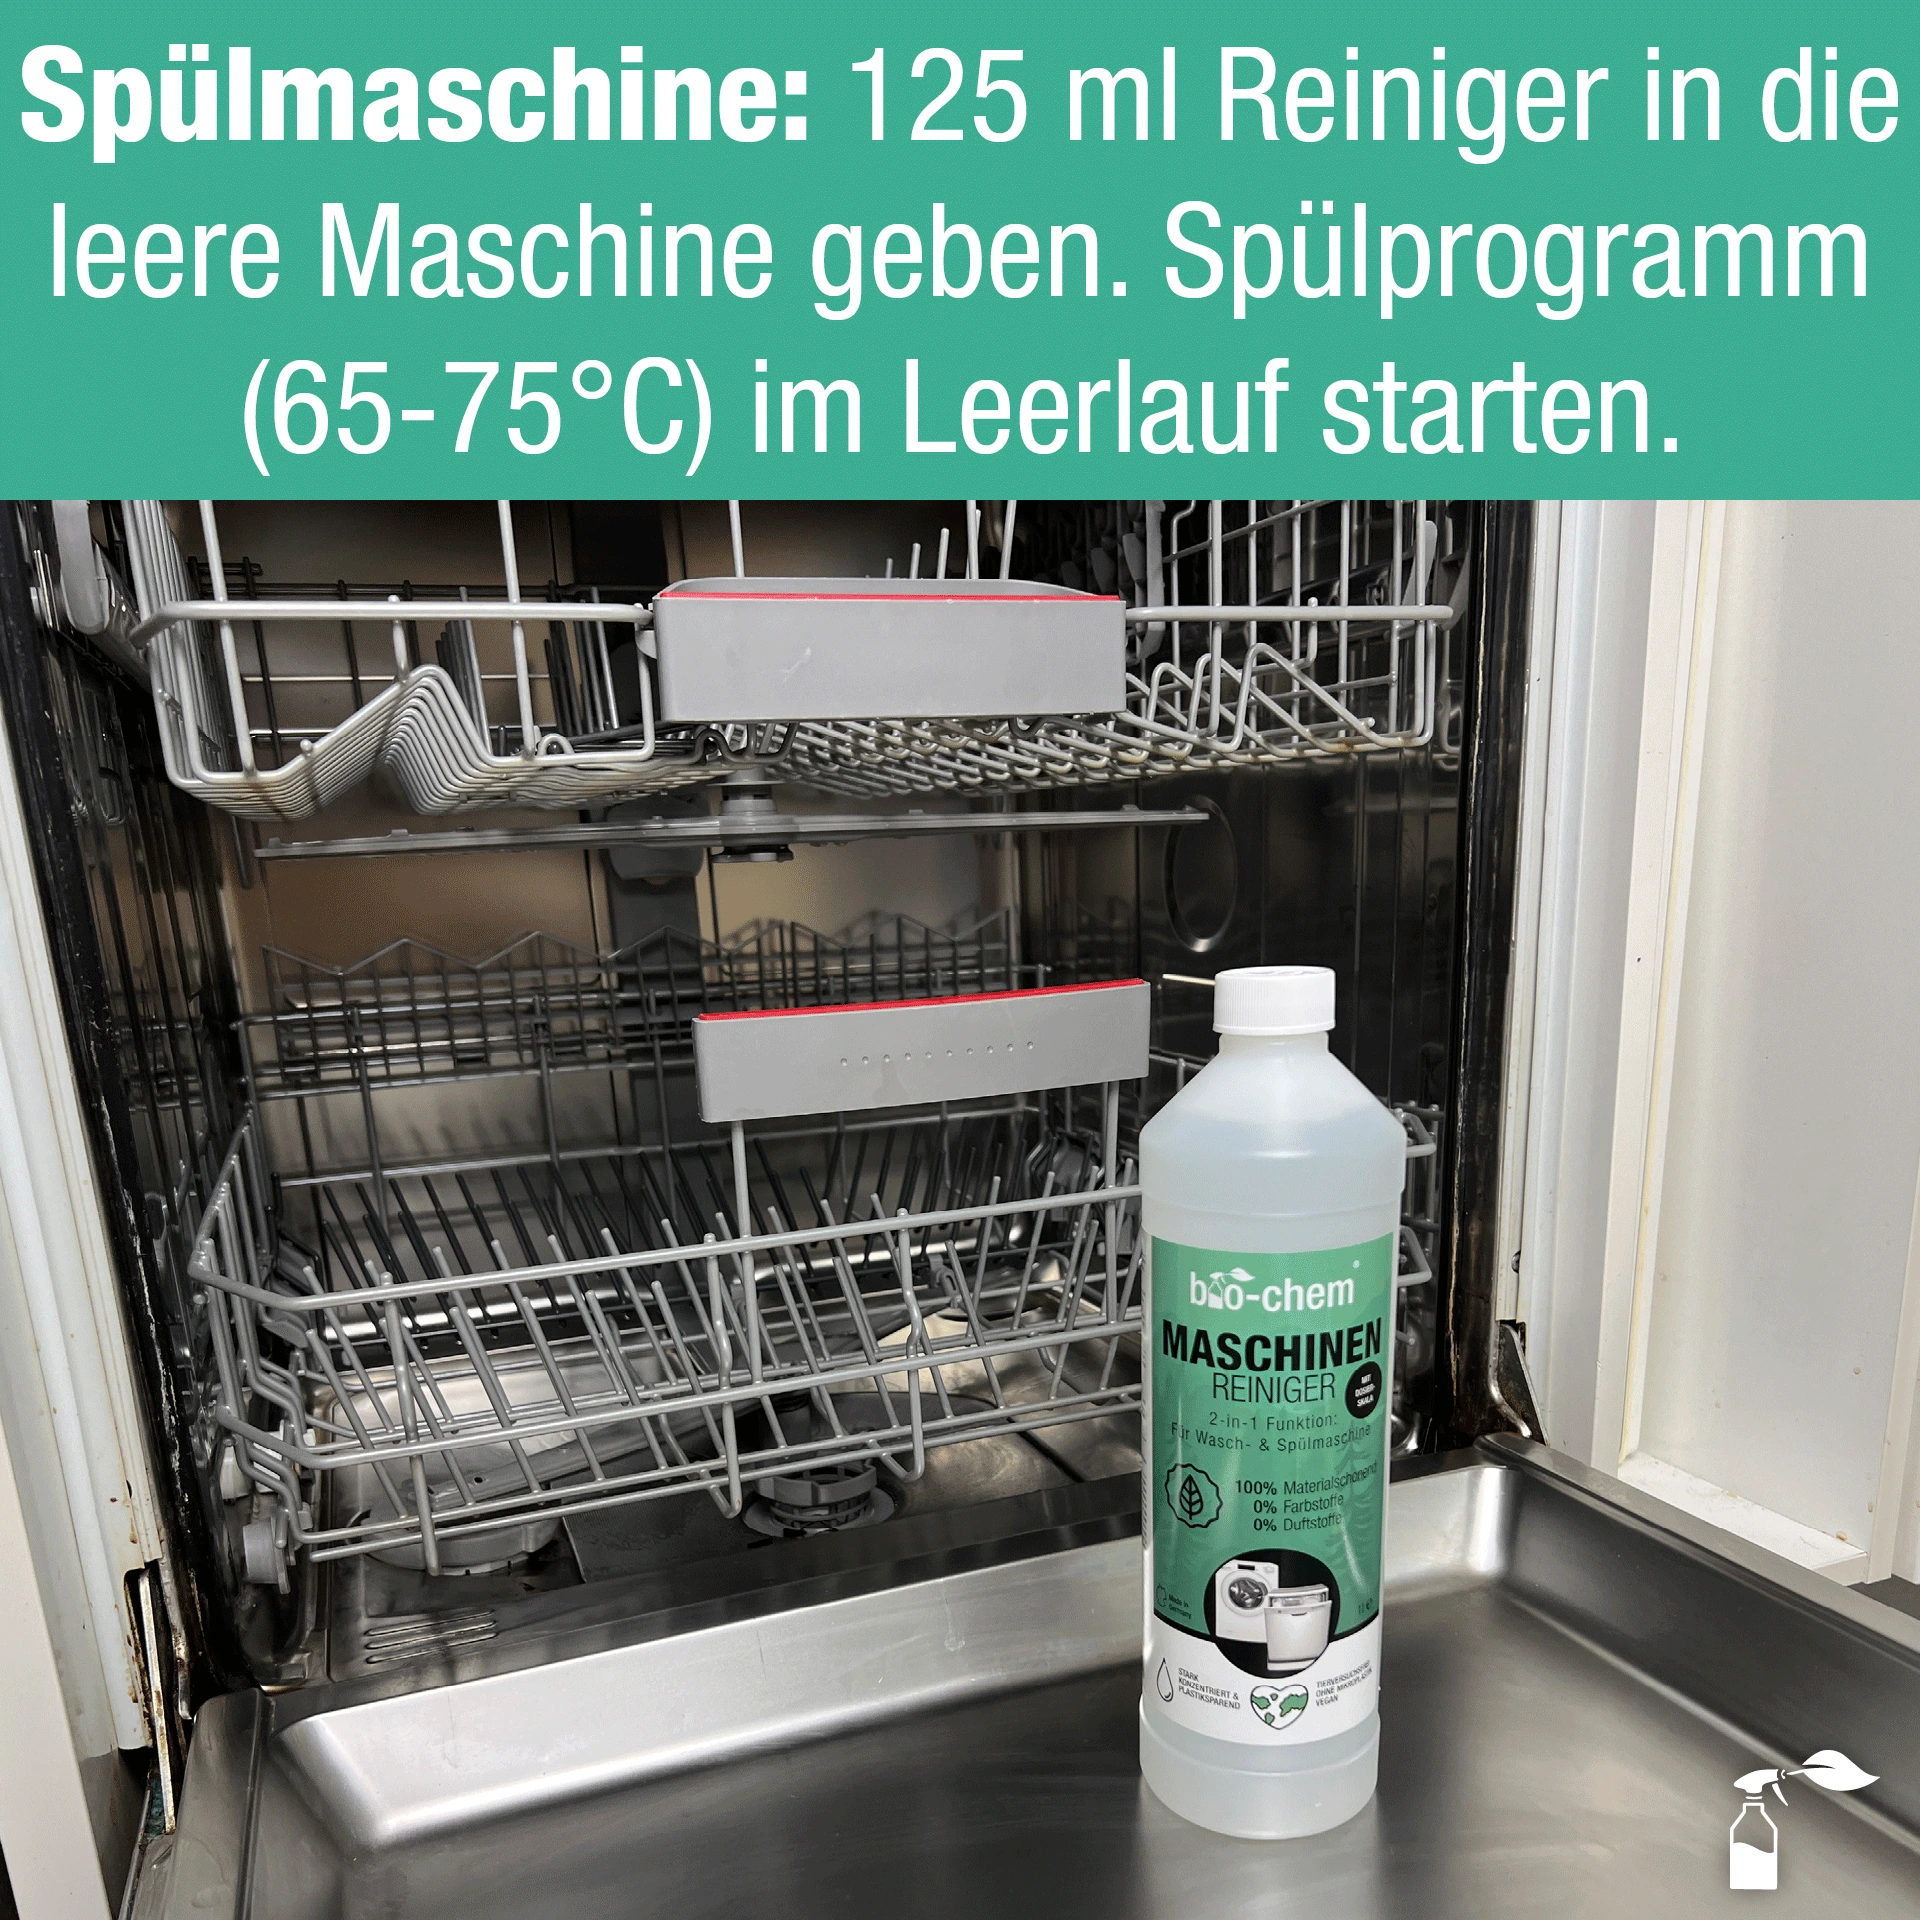 Geschirrspüler-Empfehlung: 125 ml Reiniger in die leere Maschine geben und Spülprogramm starten. 